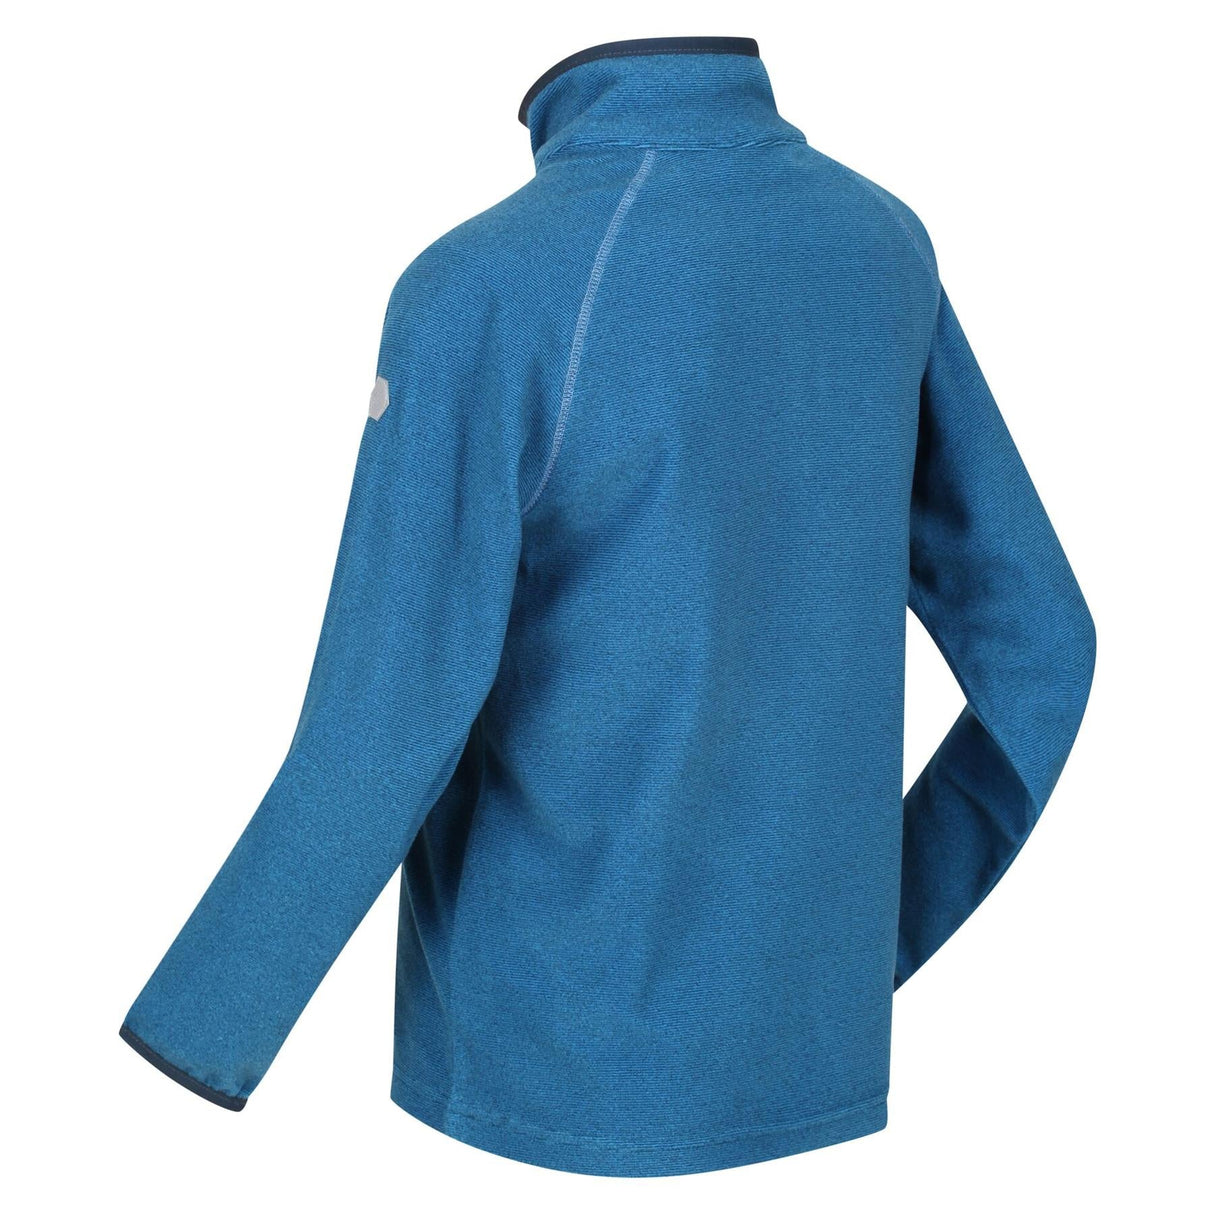 Regatta Kids Loco Half Zip Fleece - Premium clothing from Regatta - Just $10.99! Shop now at Warwickshire Clothing